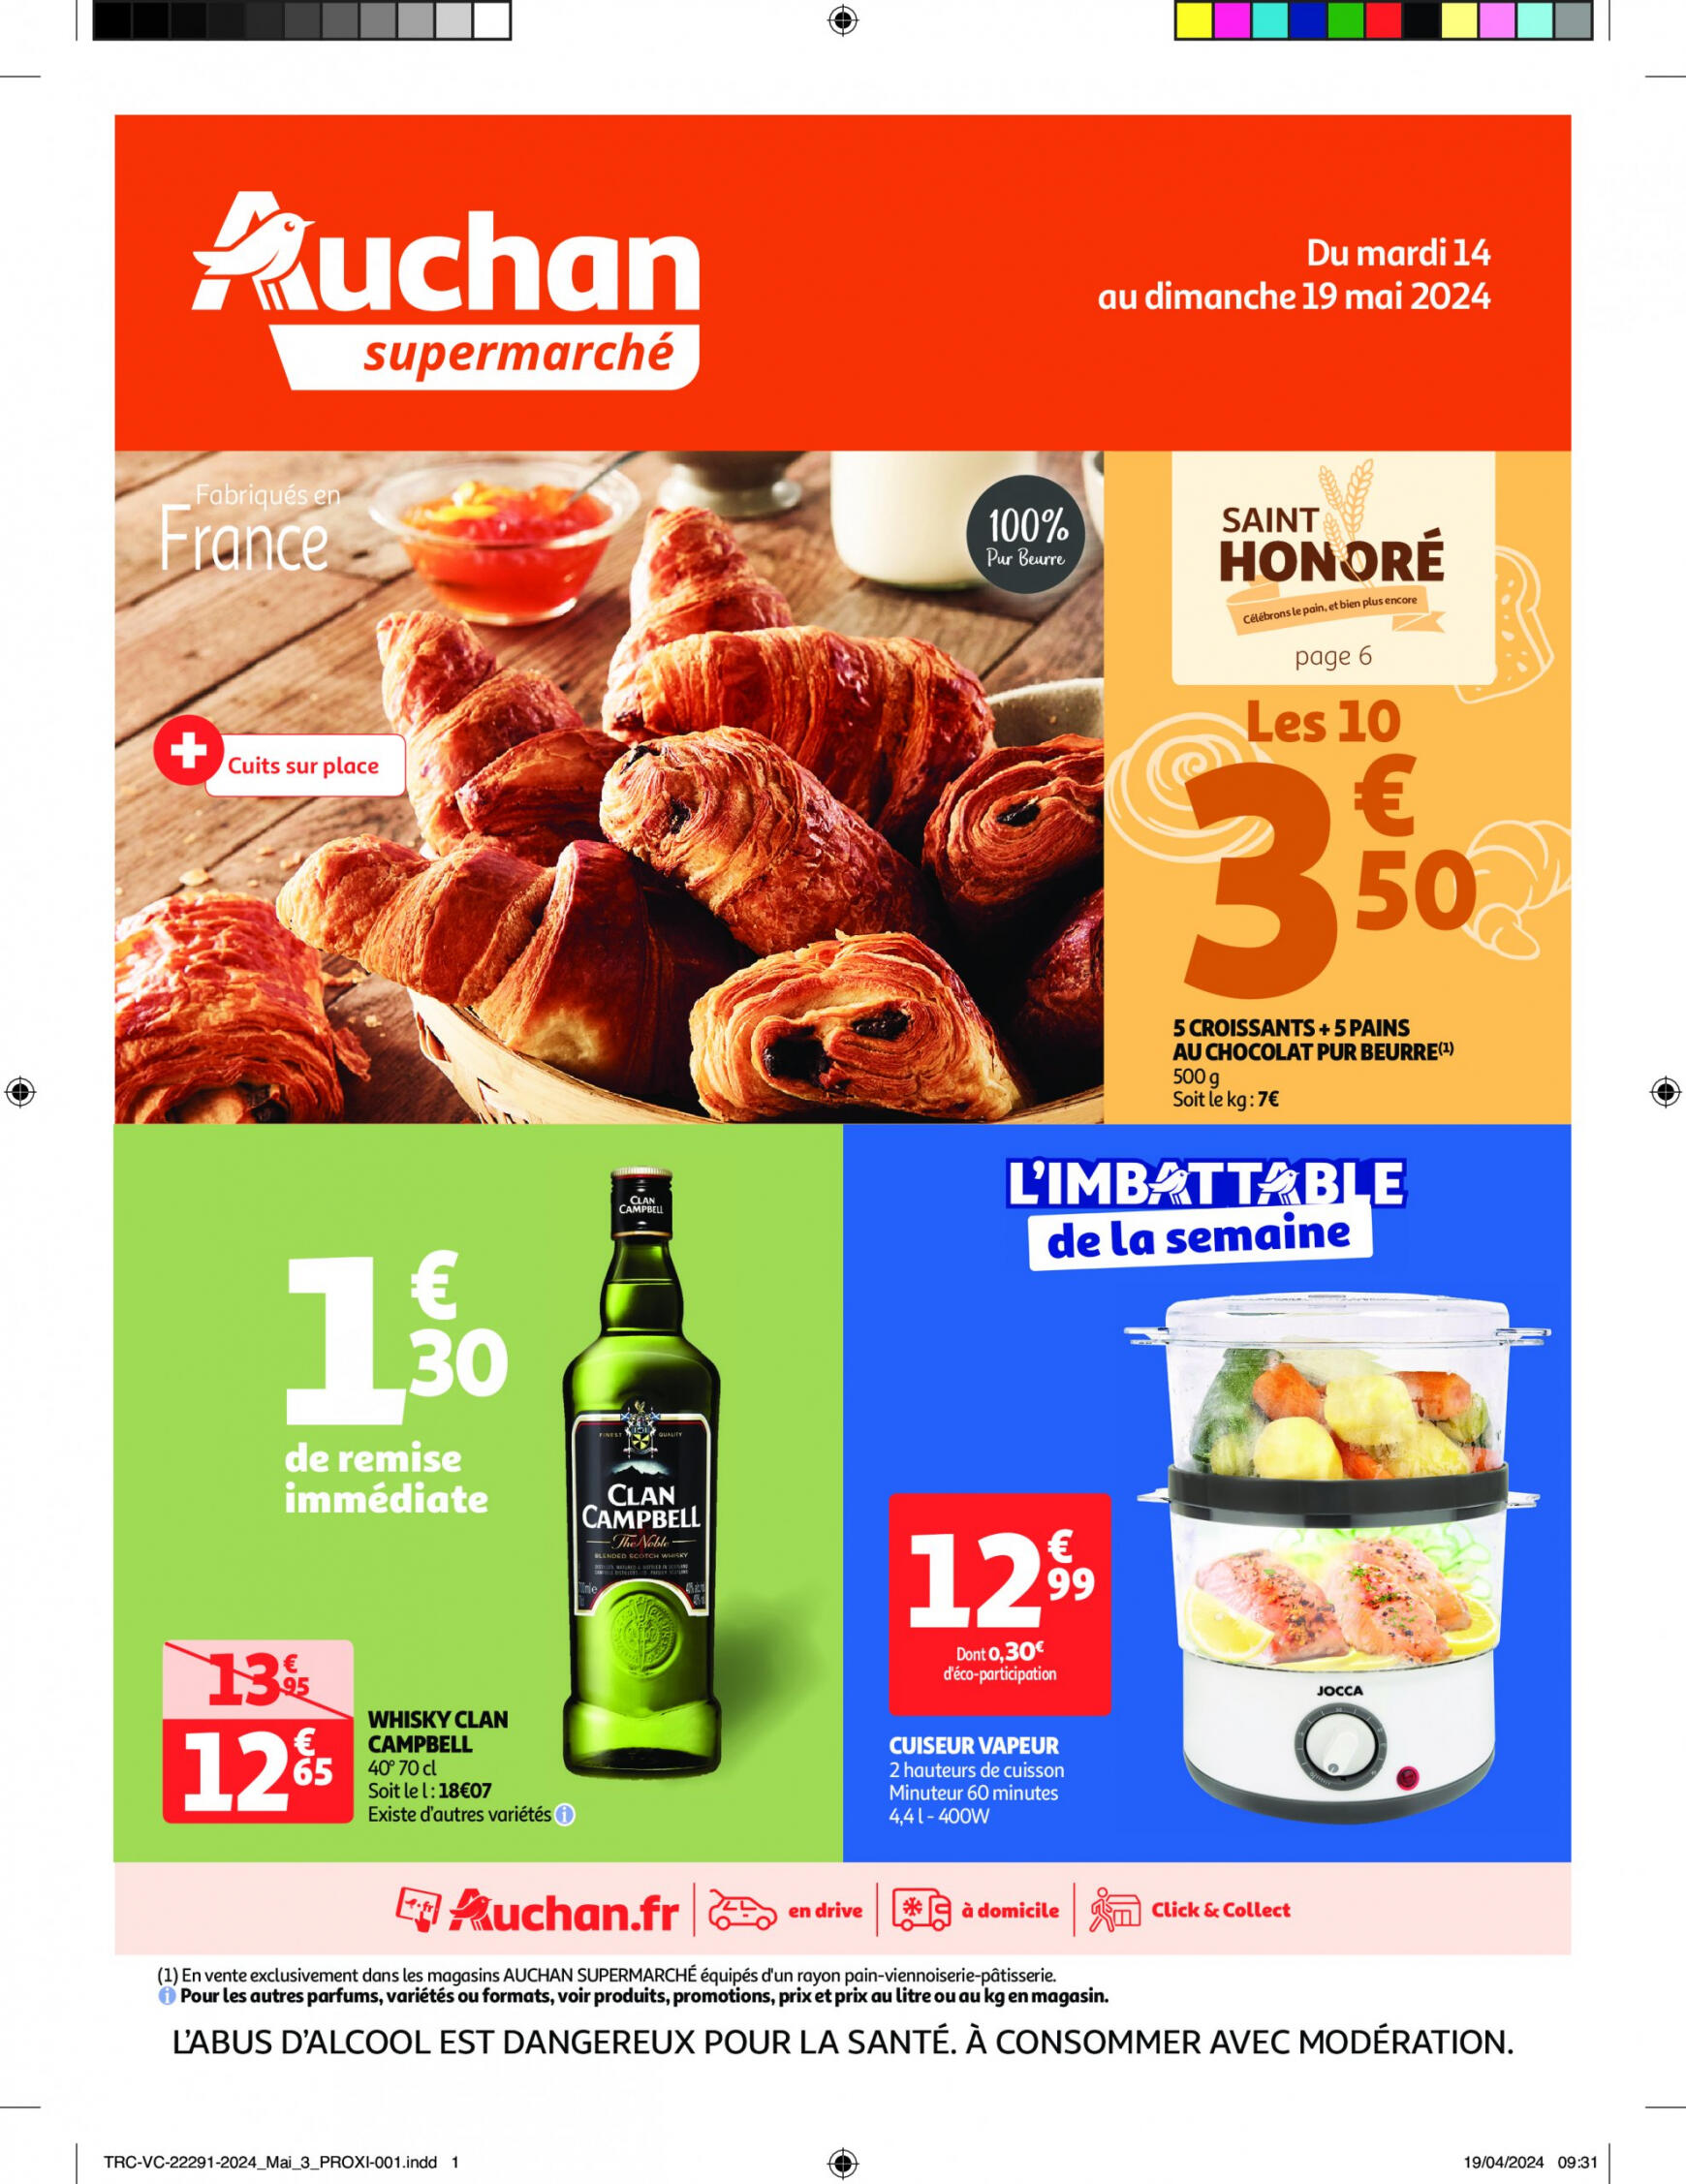 auchan - Auchan - On met le turbot sur les produits de la mer folder huidig 14.05. - 19.05. - page: 1